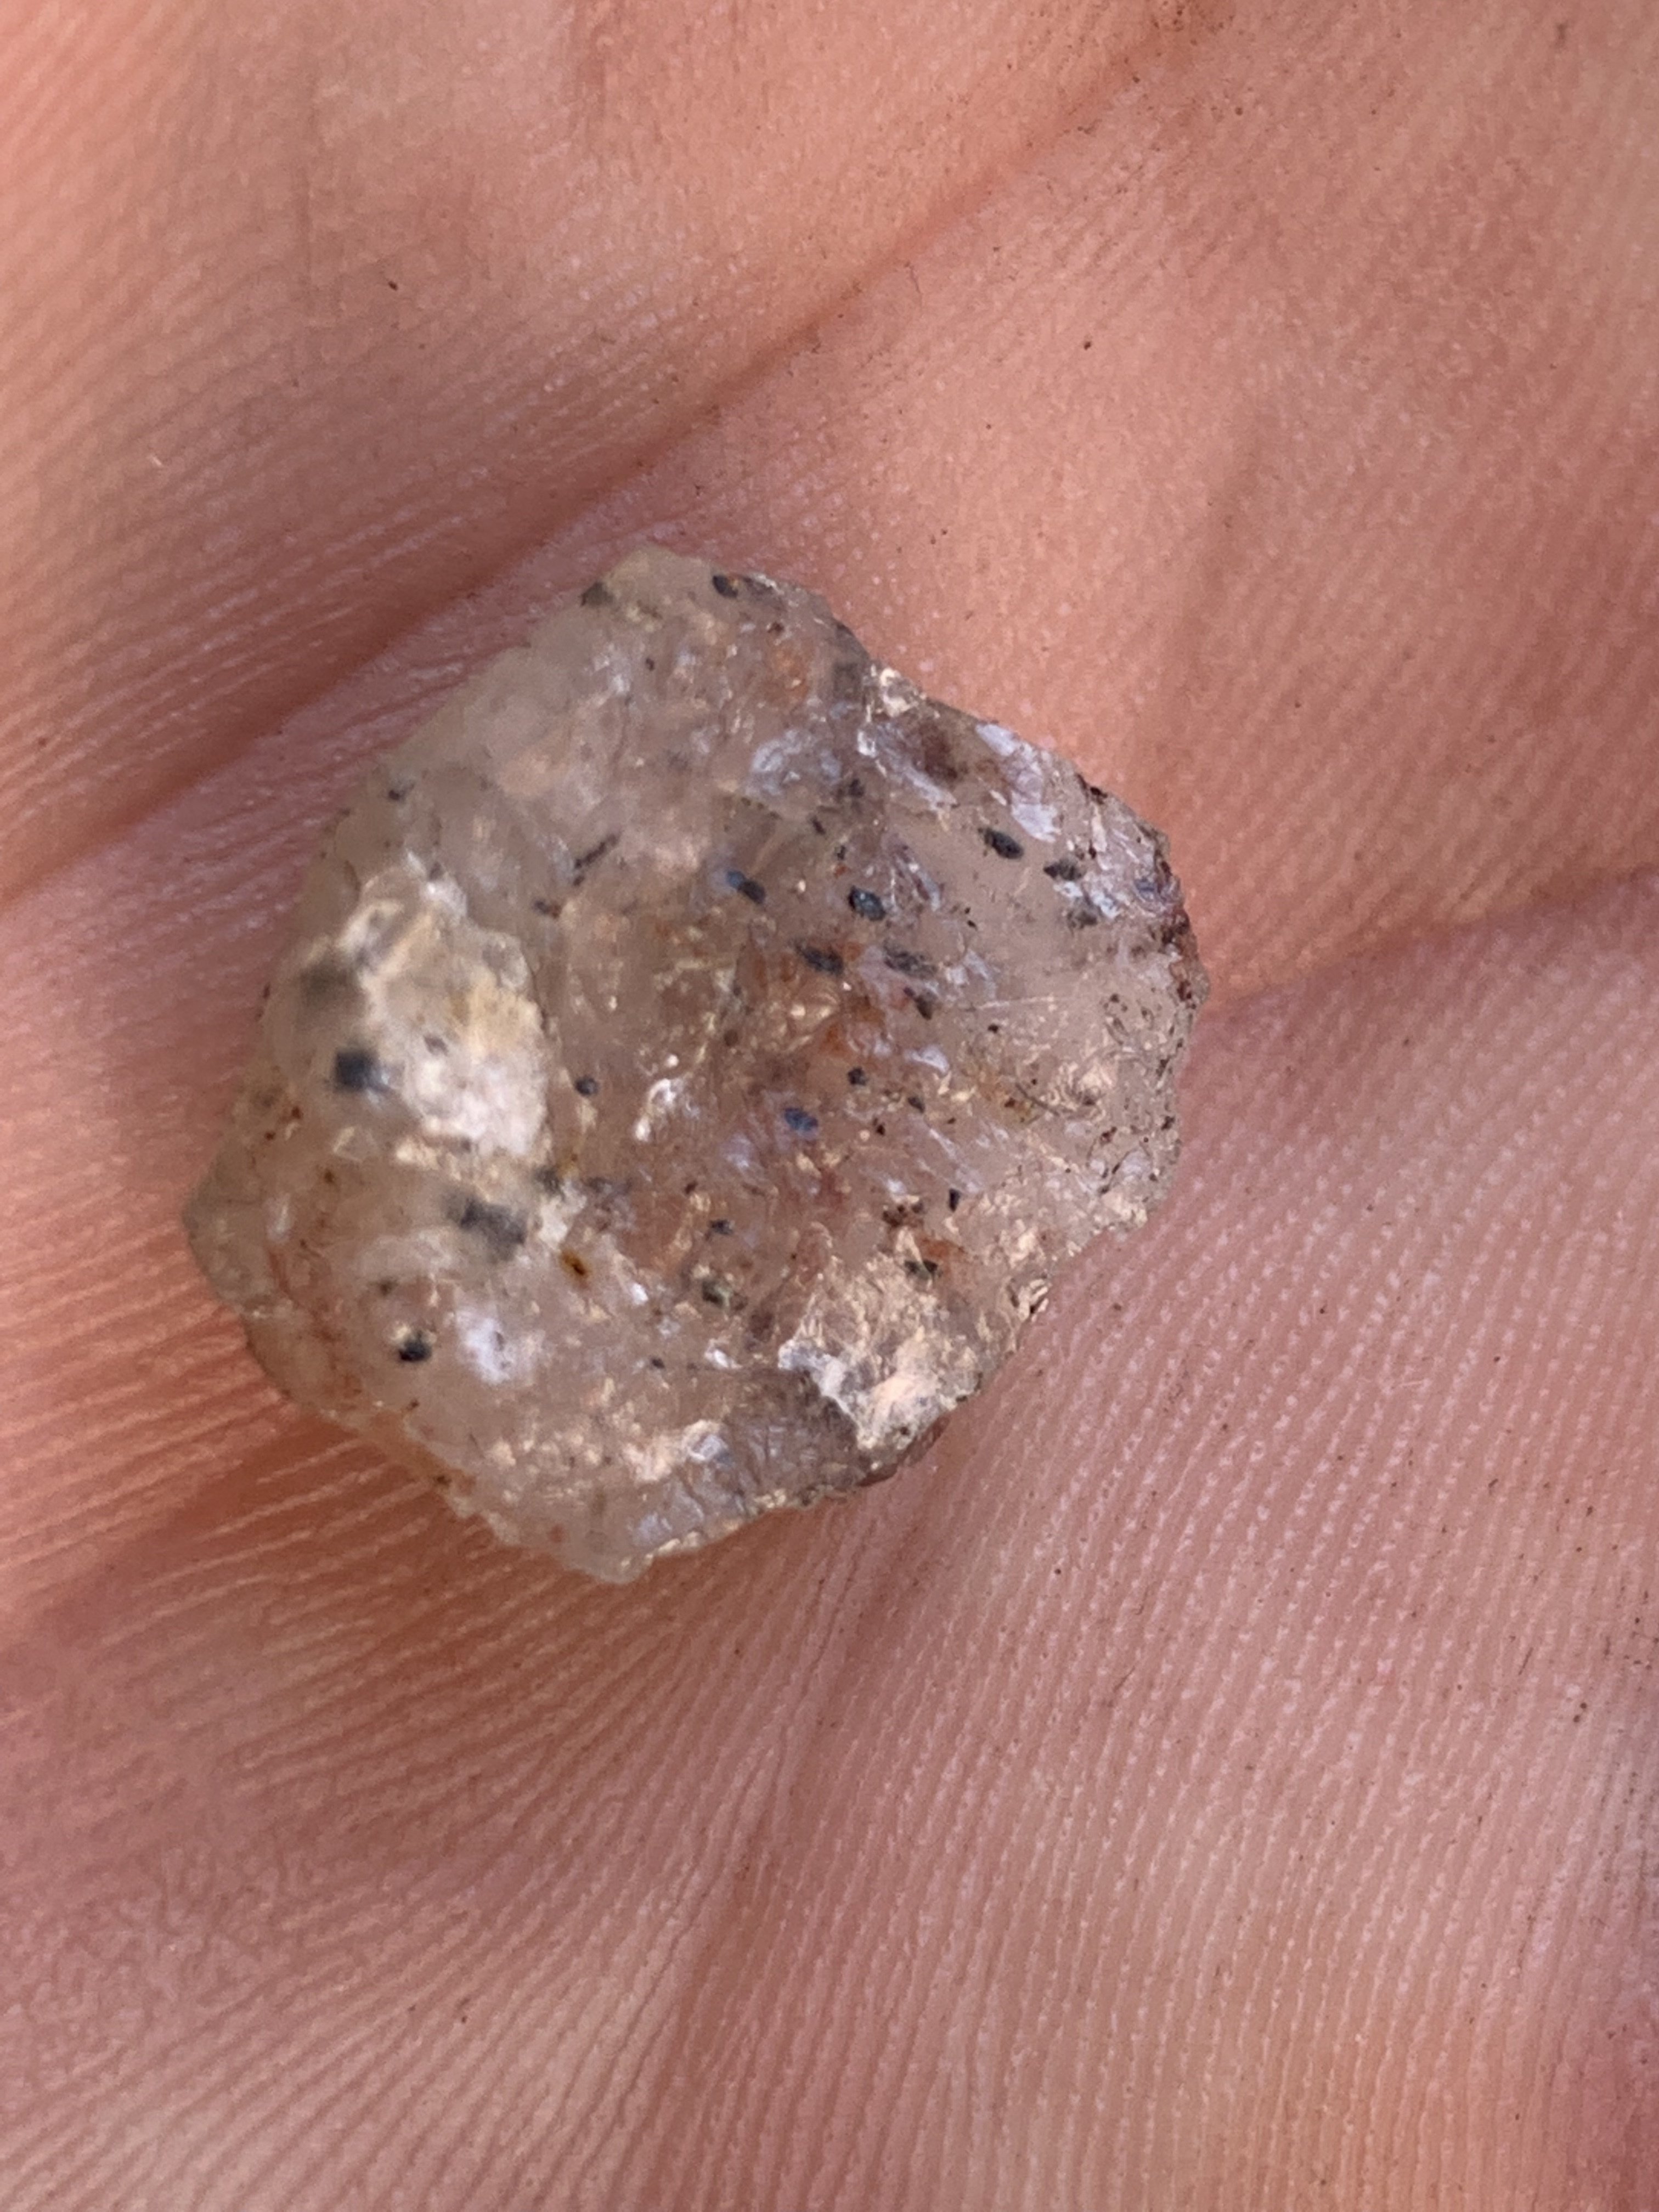 Anyone know how to identify a raw diamond? : r/rockhounds